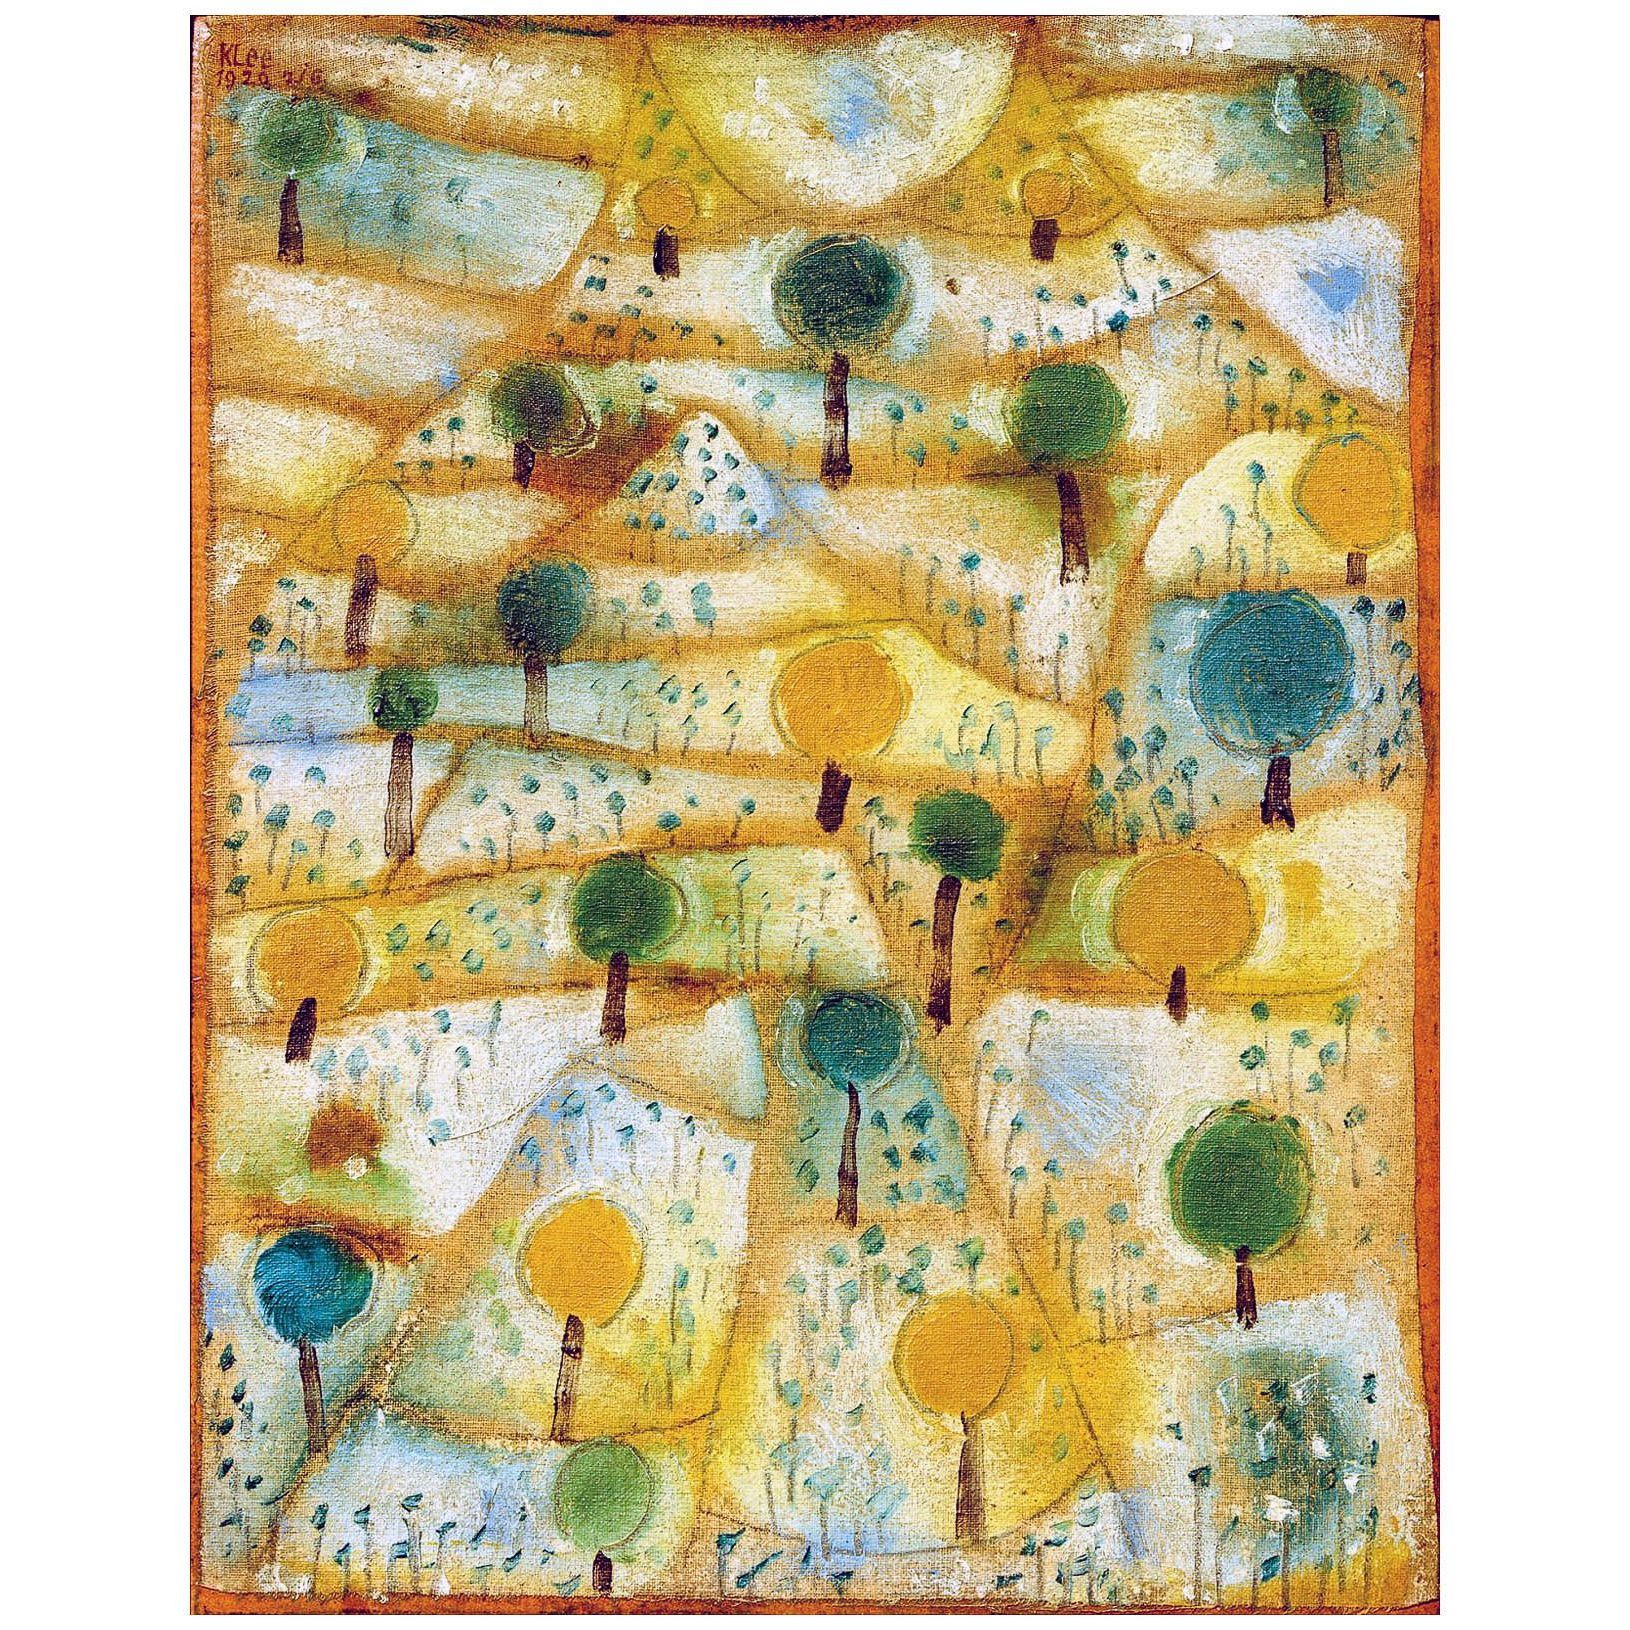 Paul Klee. Kleine rhythmische Landschaft. 1920. Privatsammlung